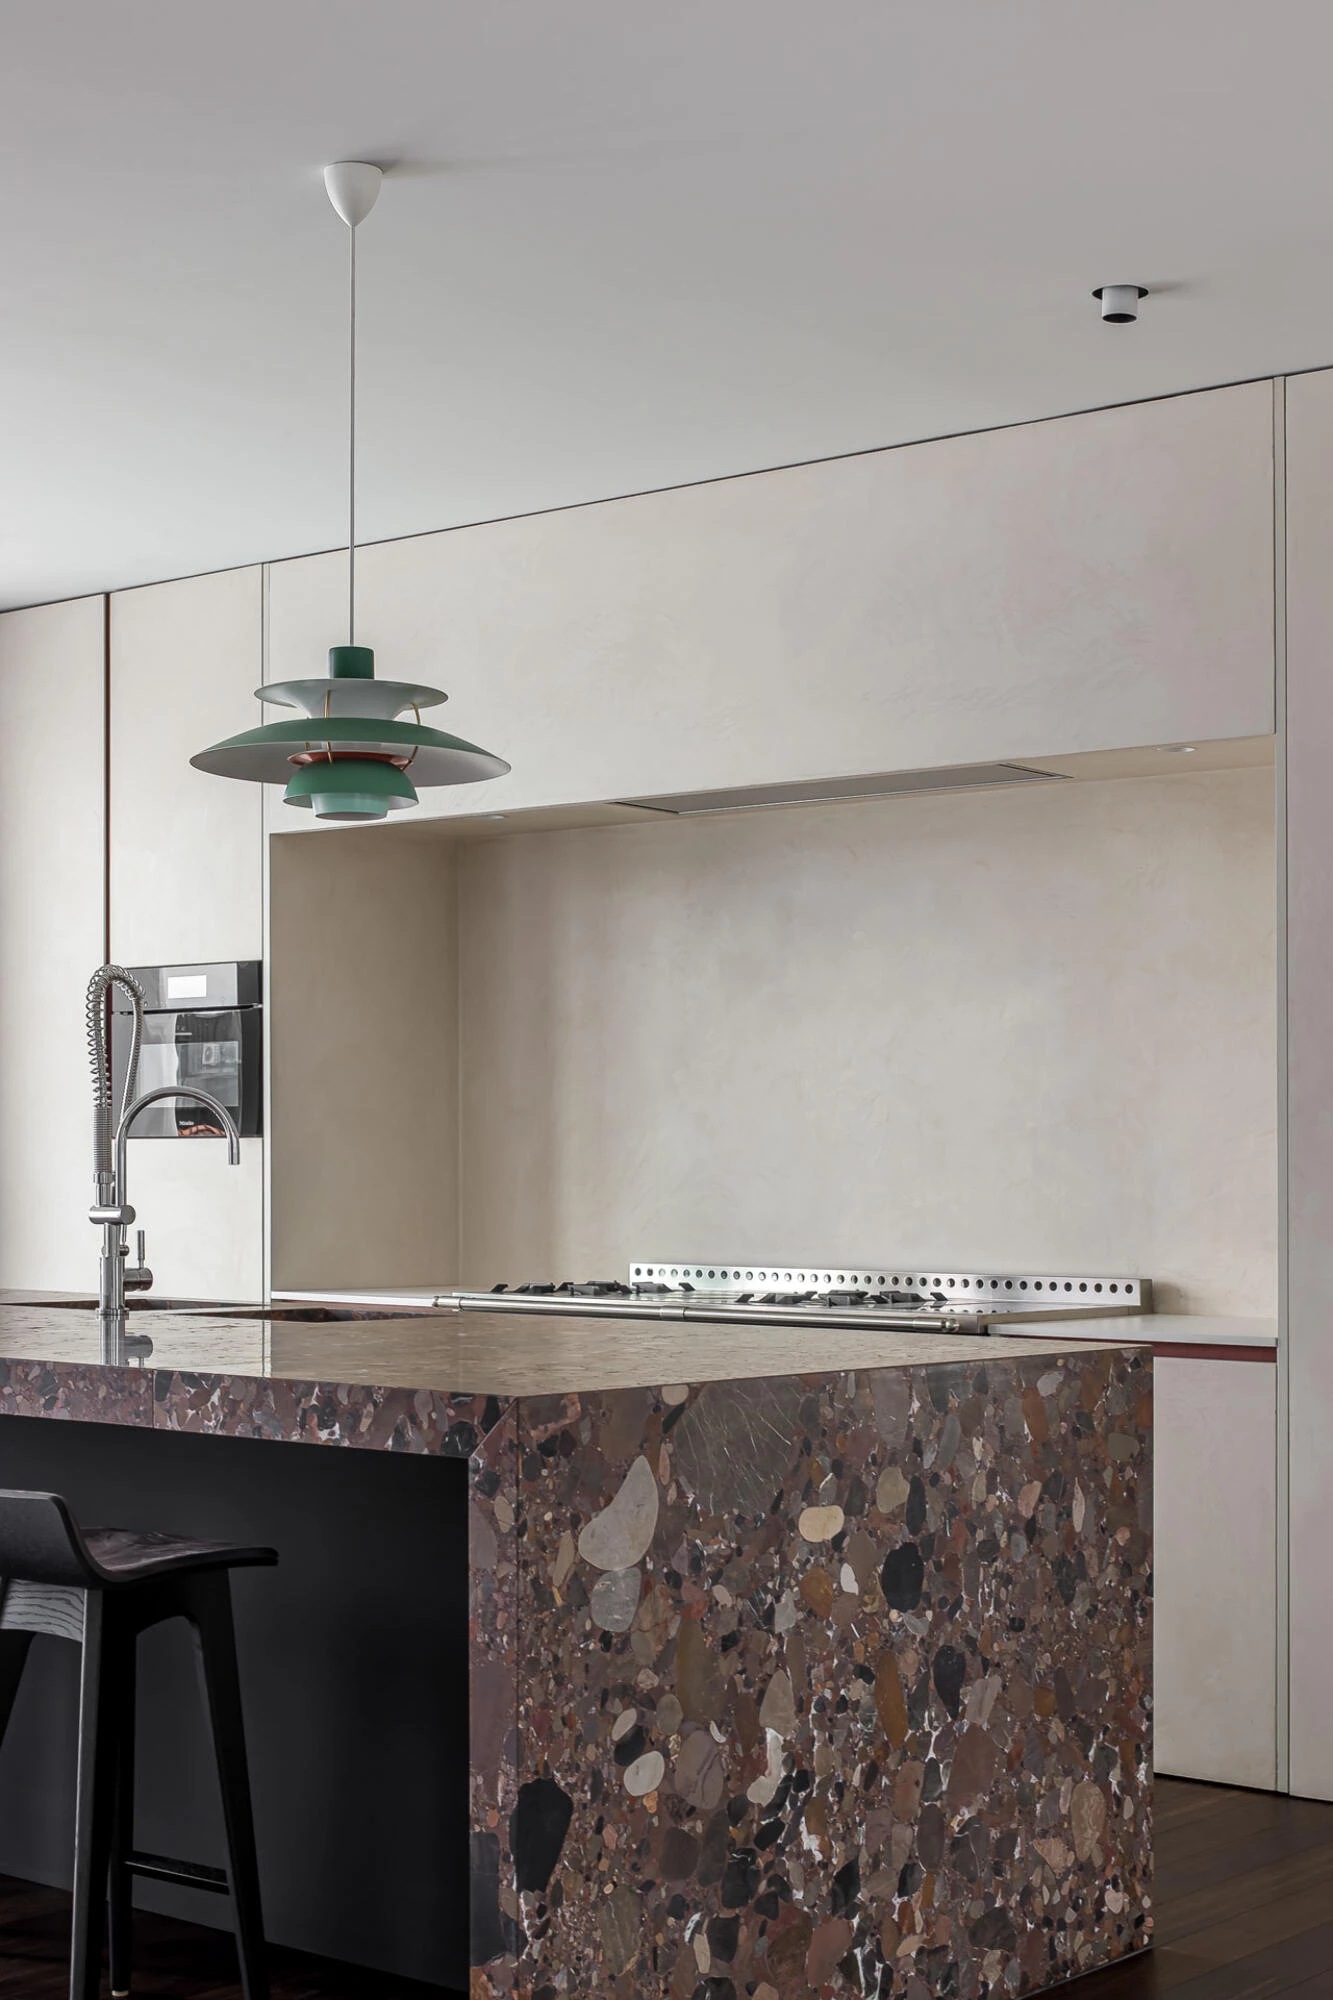 Designer kitchen with built-in functionalities and terrazzo kitchen worktop